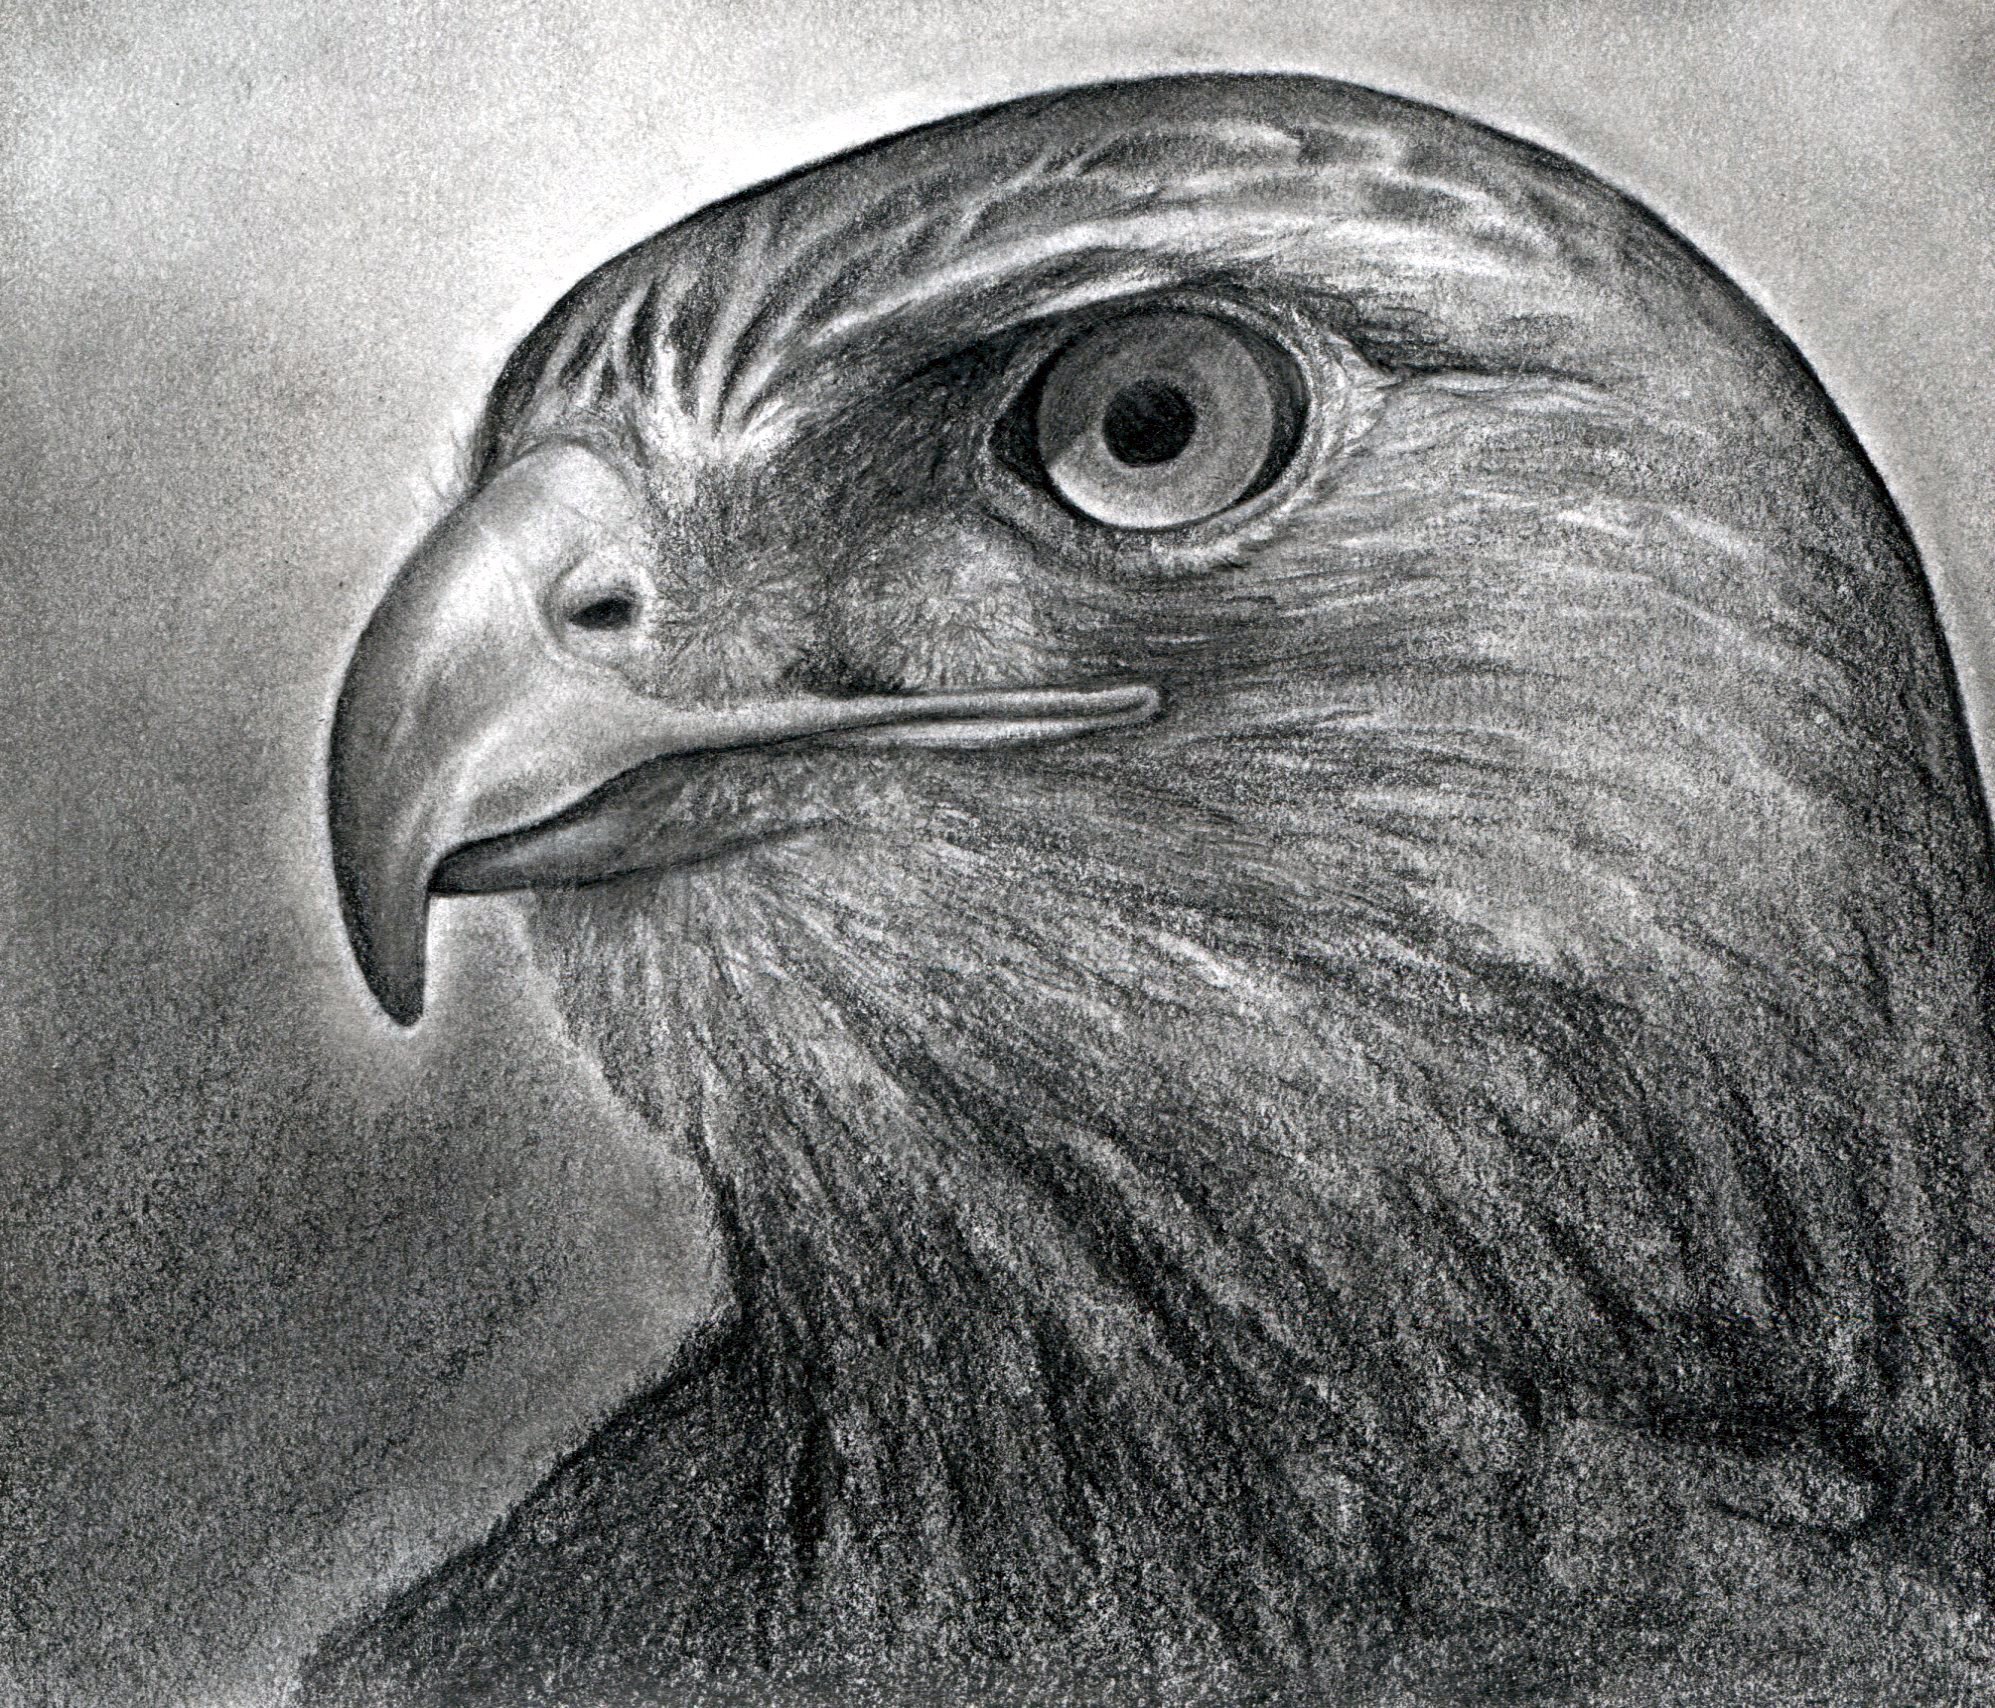 Hawk Drawing Fine Art